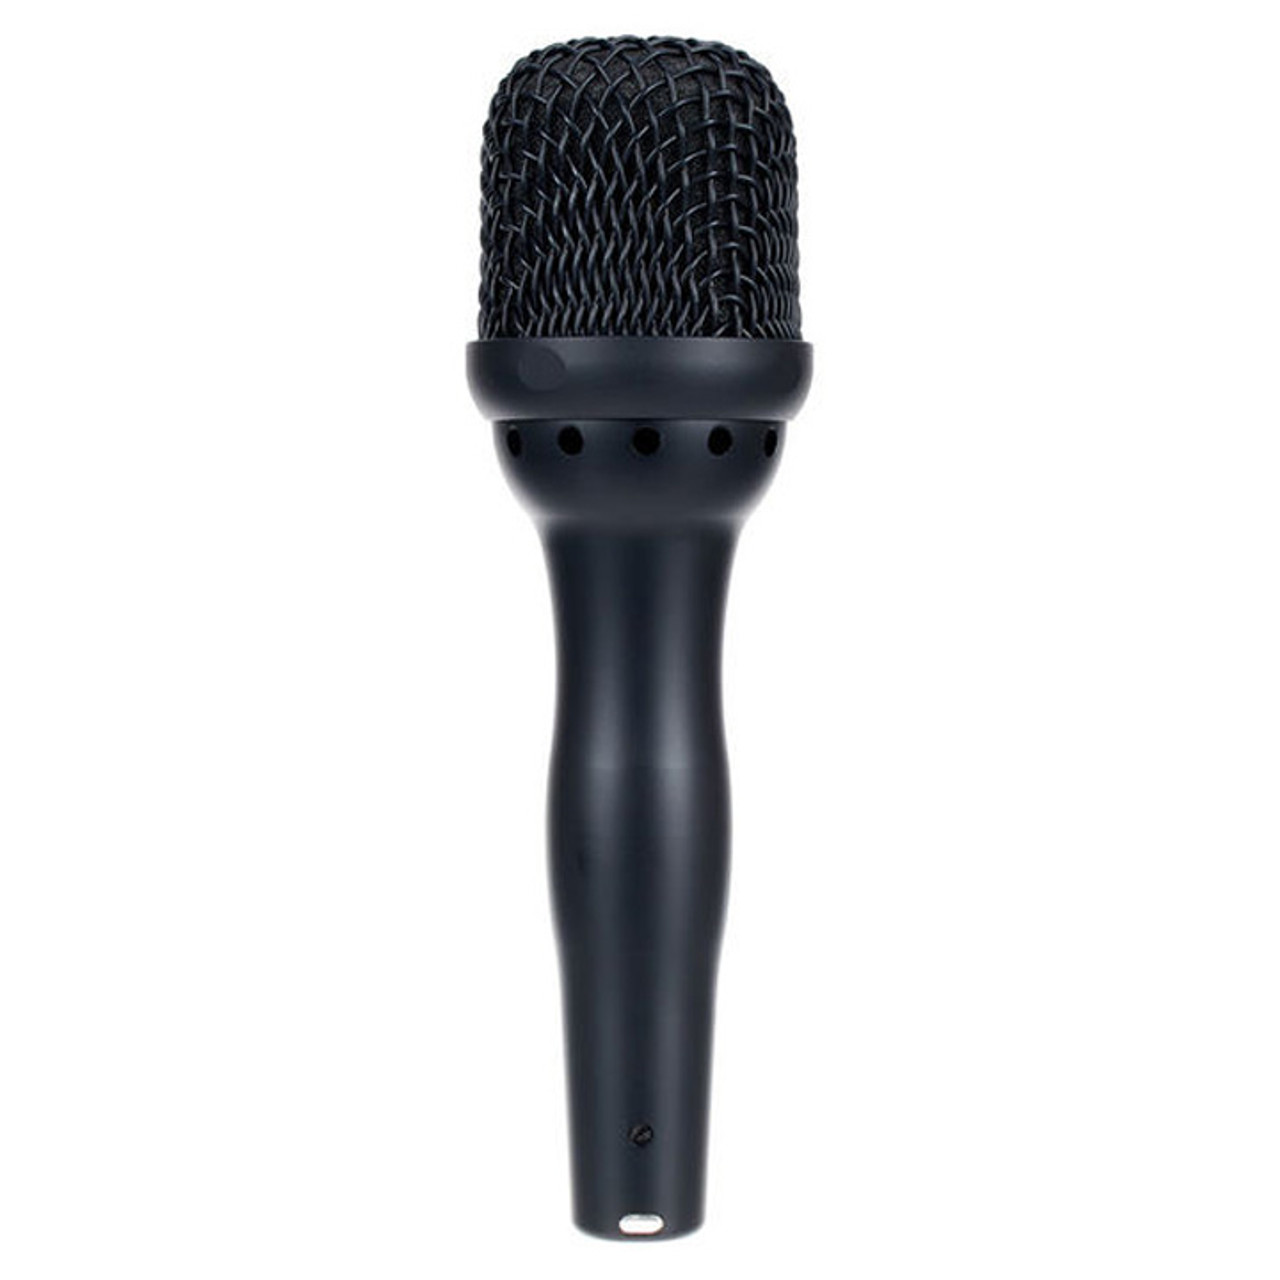 Ehrlund EHR-H Microphone FrontEndAudio.com